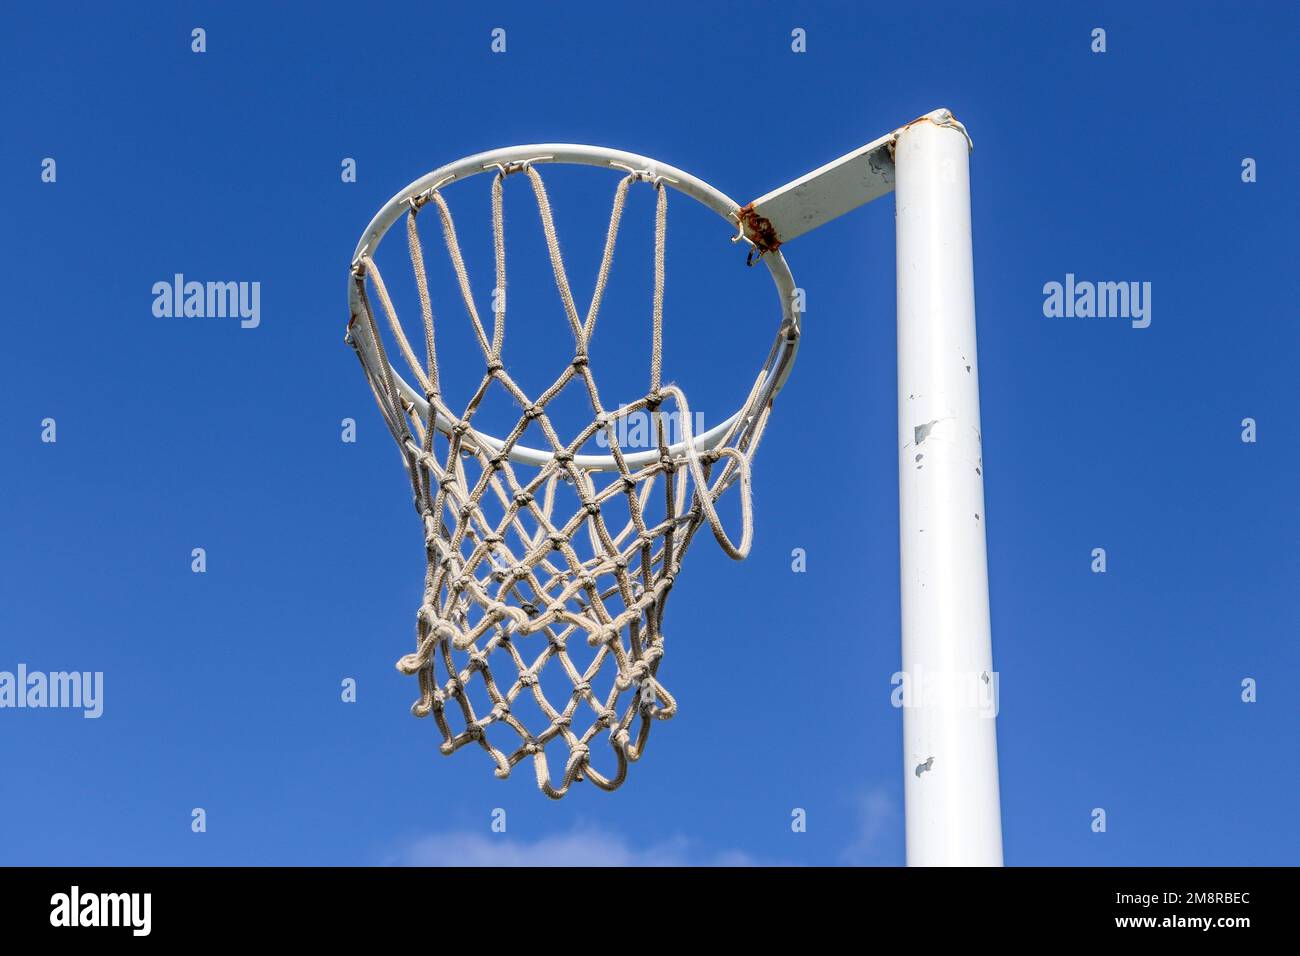 A netball hoop against a blue sky Stock Photo